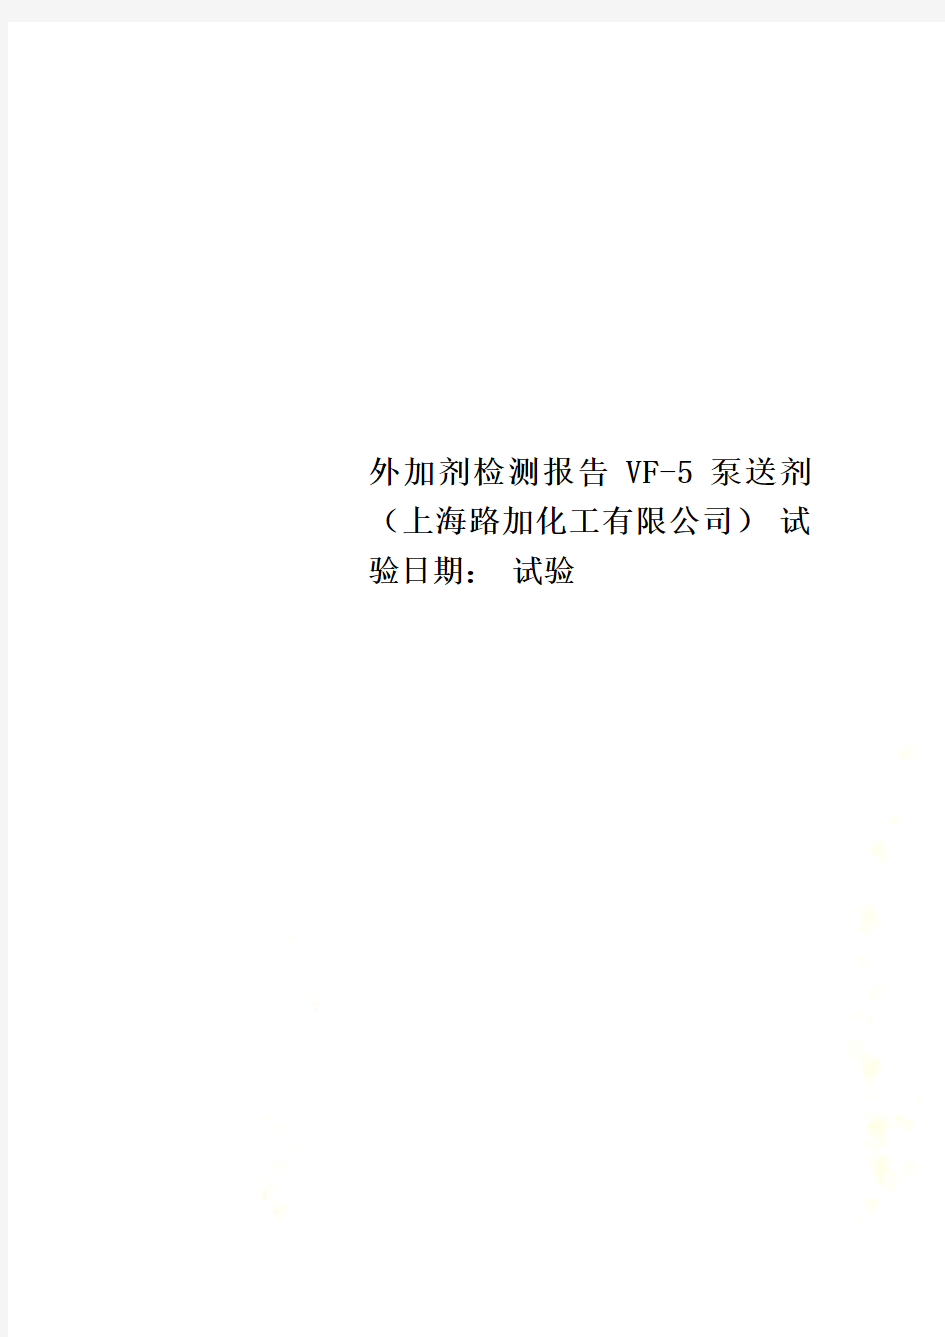 外加剂检测报告 VF-5 泵送剂(上海路加化工有限公司) 试验日期： 试验